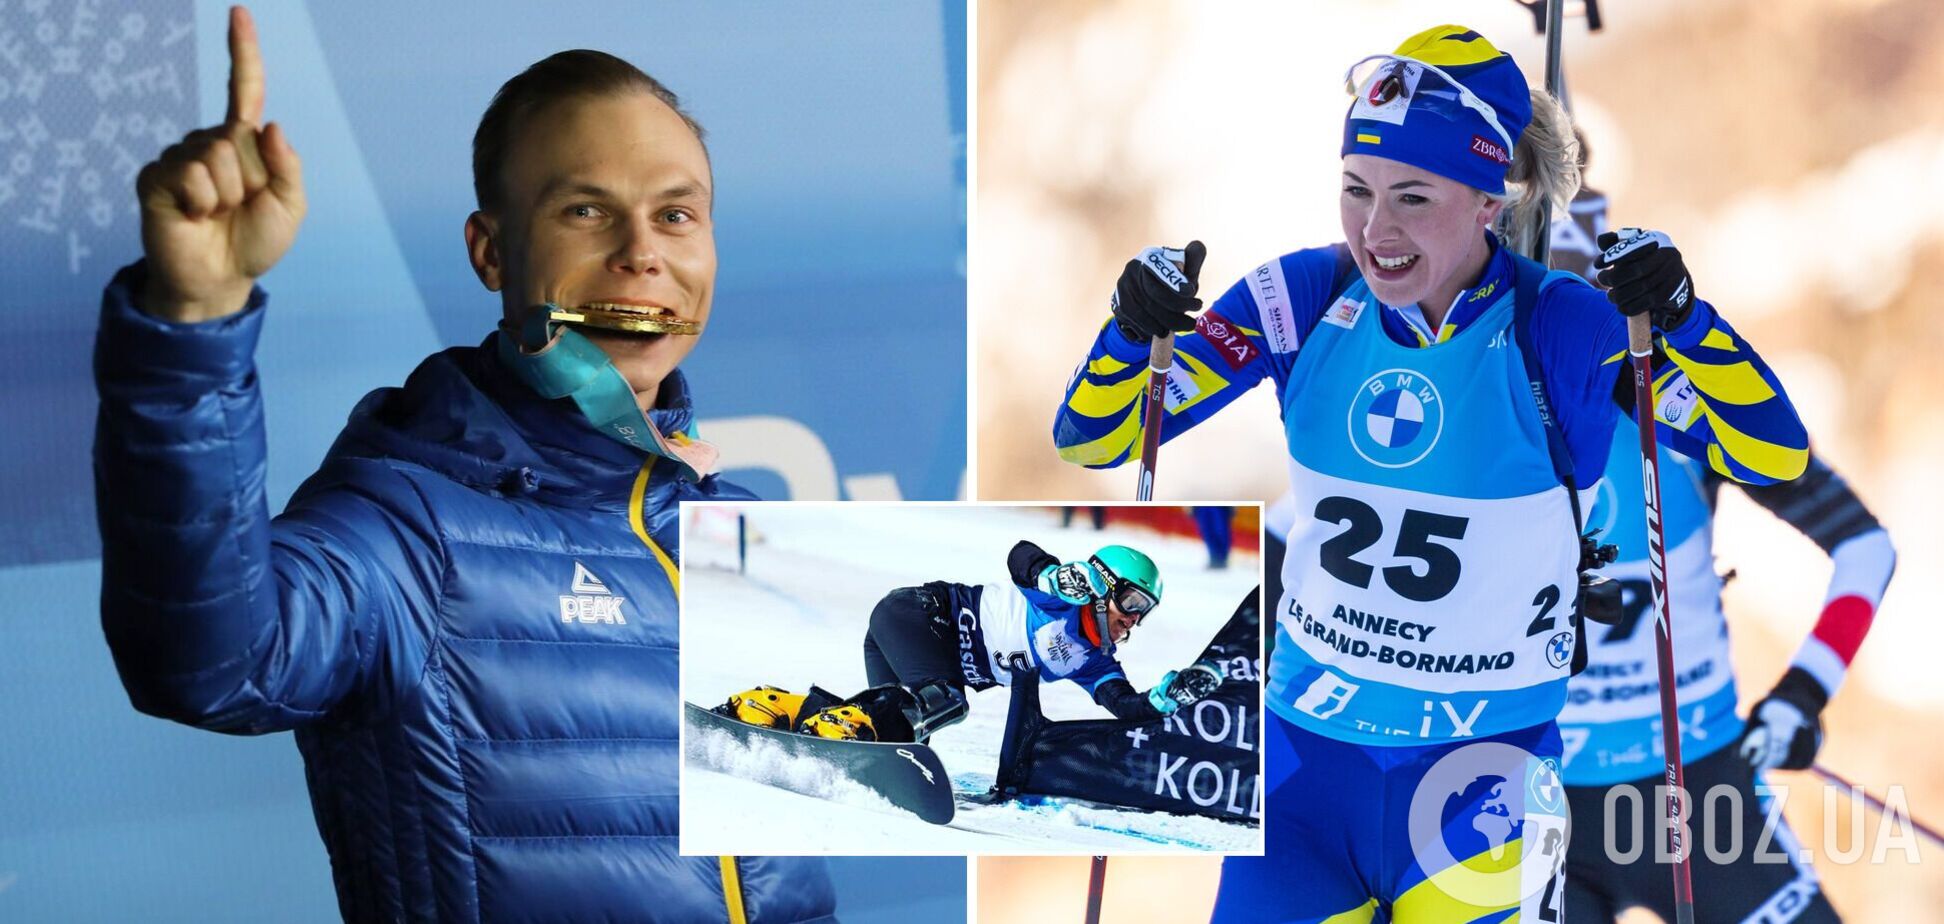 Хто принесе Україні медаль Олімпіади-2022: біатлоністи страждають від коронавірусу, а акробати наступають командою